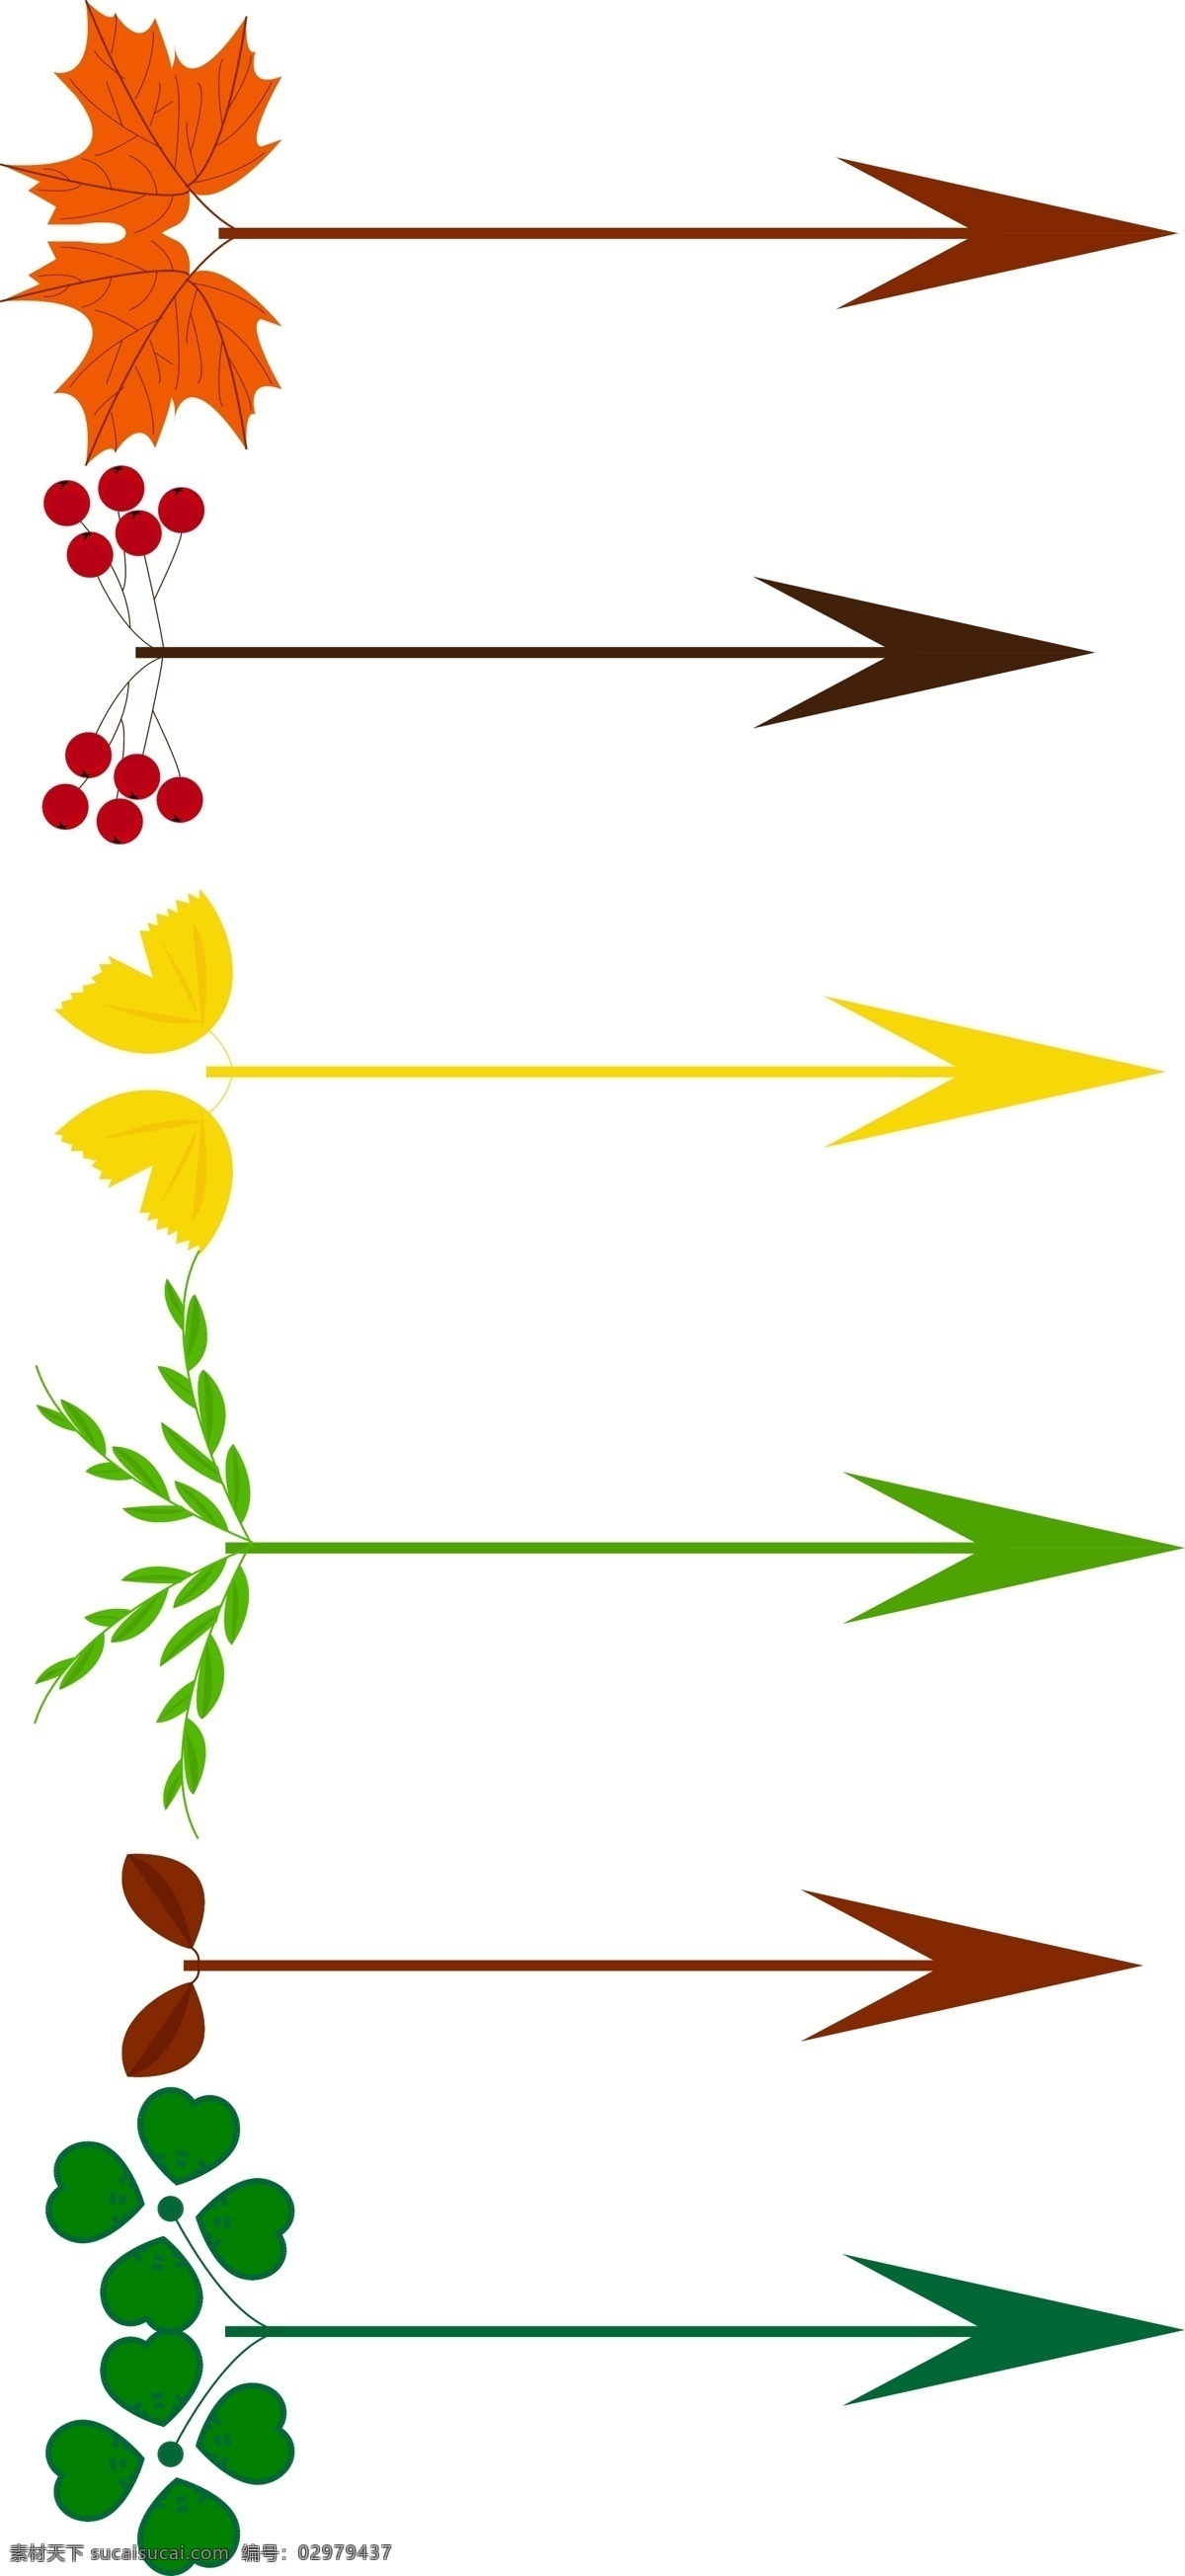 四季 植物 创意 树叶 箭头 套 图 枫叶 银杏 四叶草 山楂 柳叶 枯叶